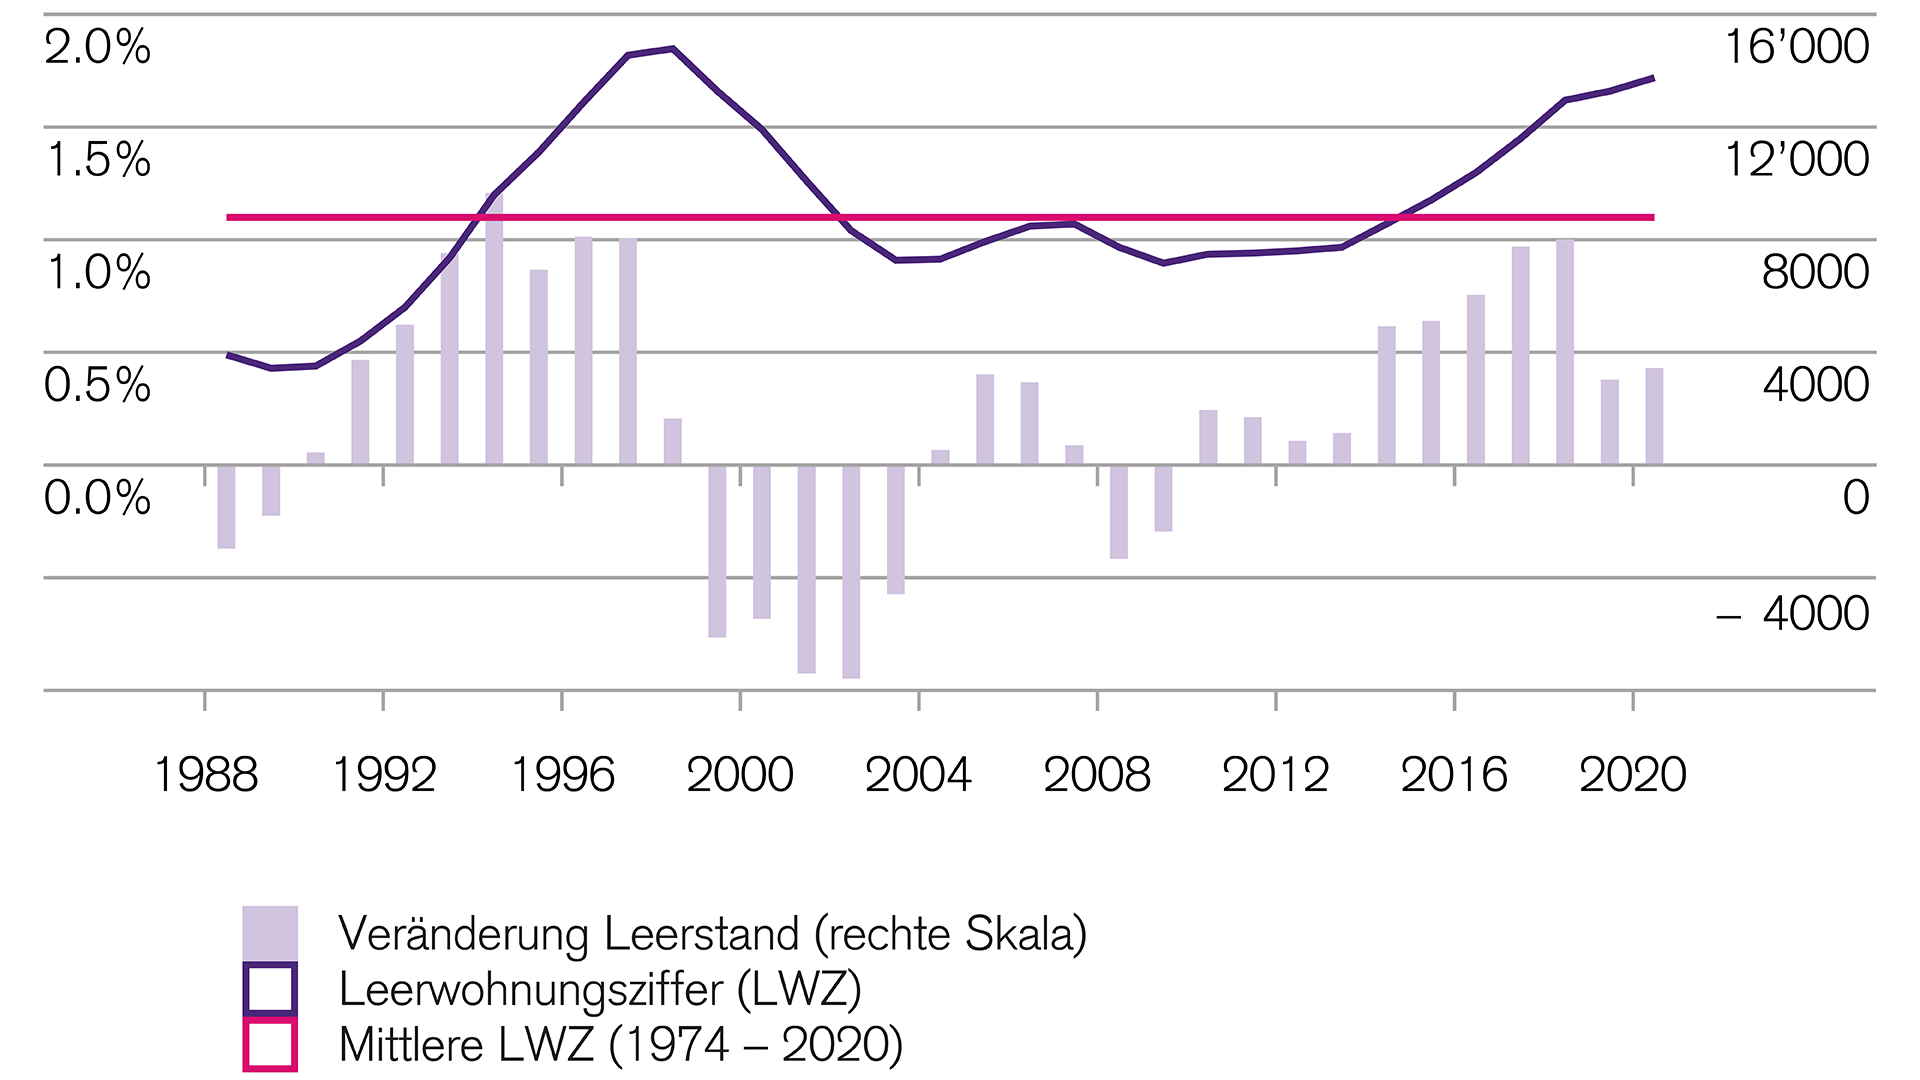 Finanzmärkte: Schweizer Leerwohnungsziffer so hoch wie lange nicht mehr